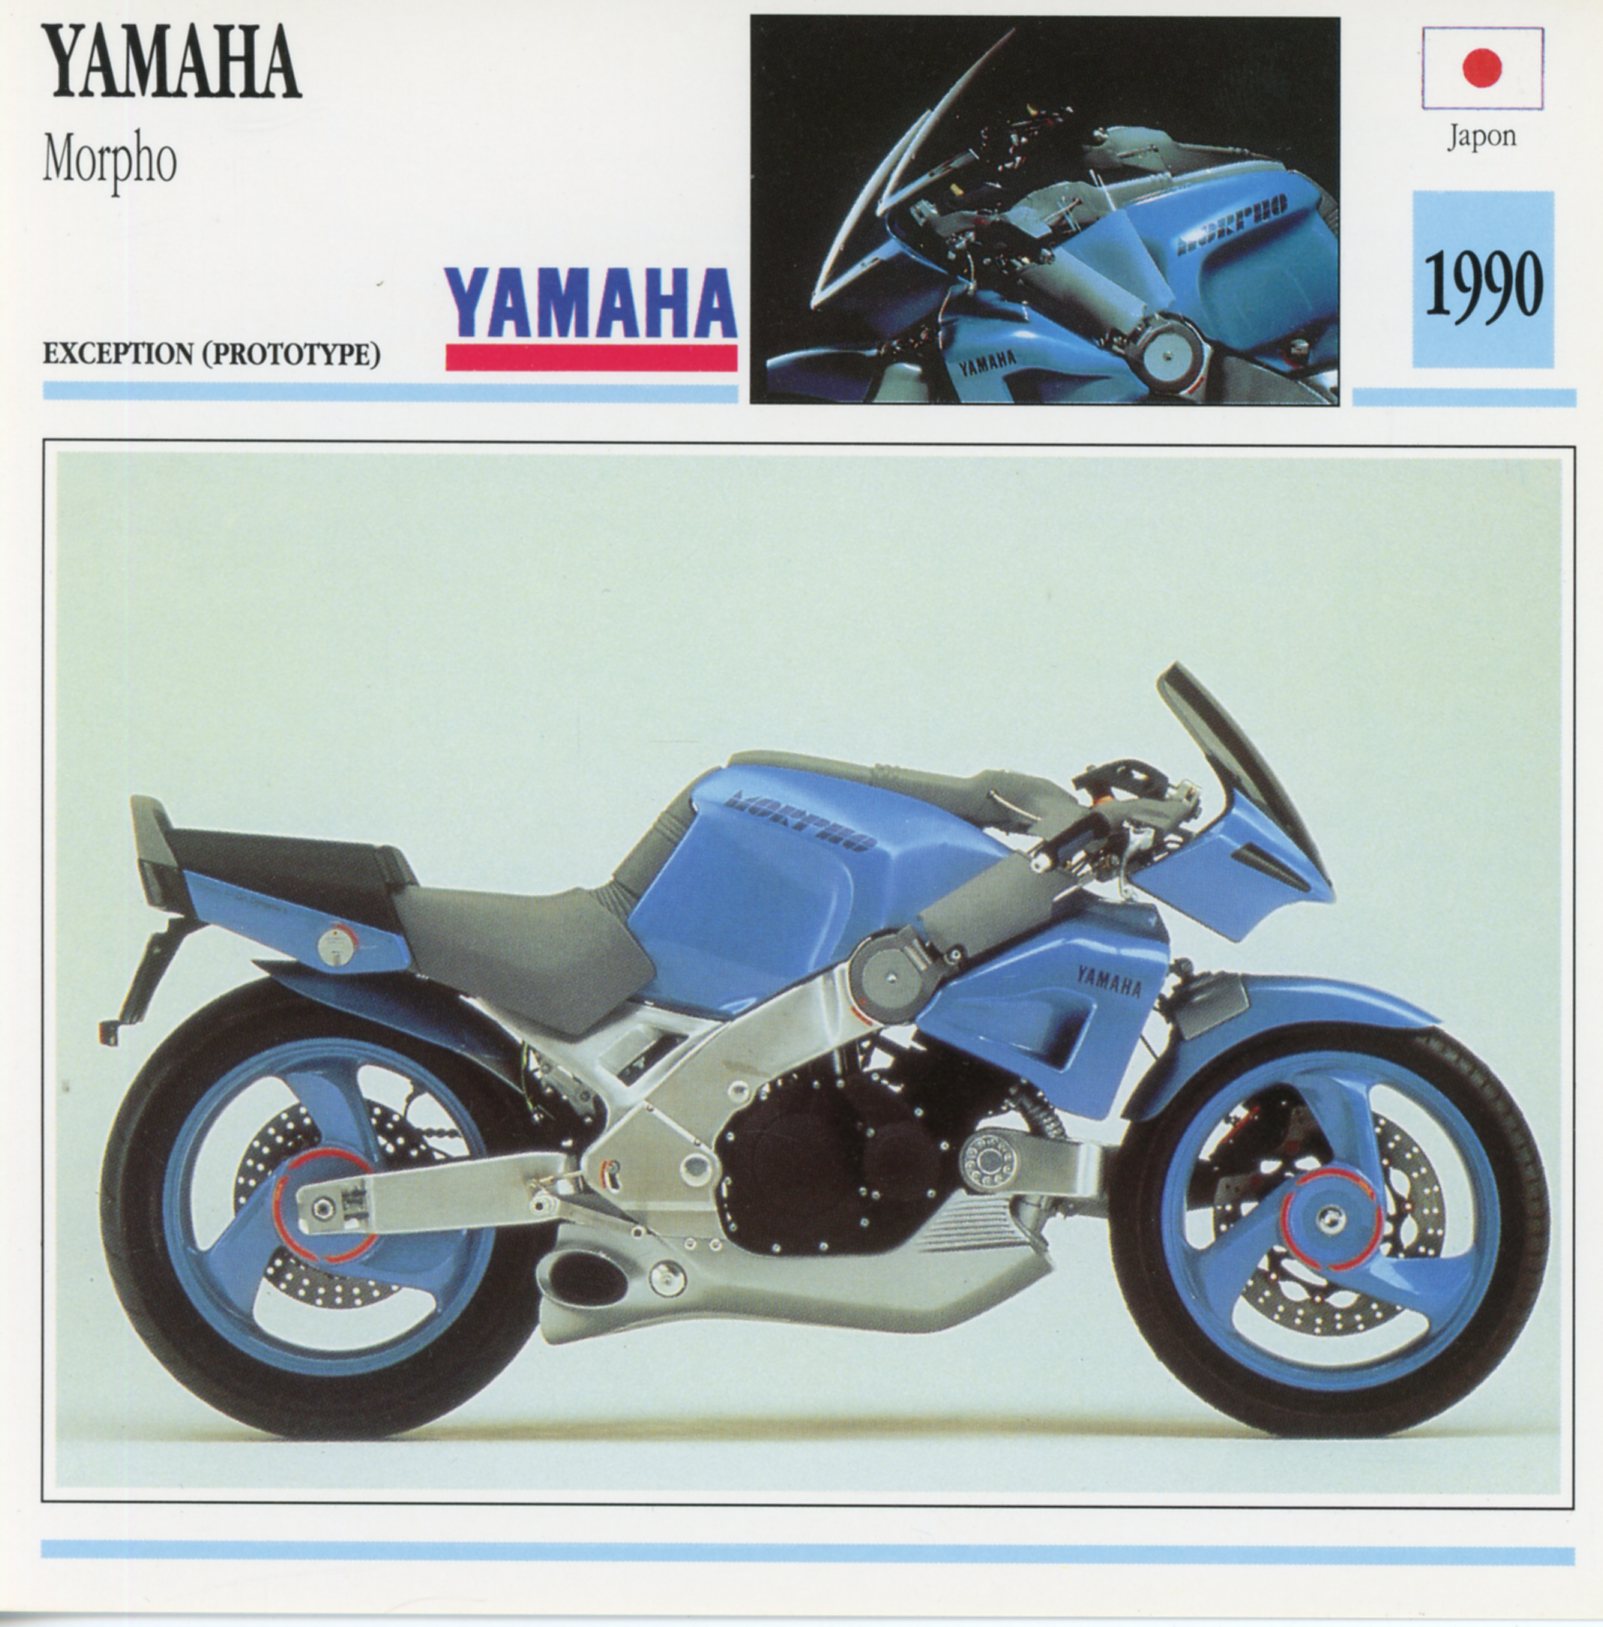 FICHE-MOTO-YAMAHA-MORPHO-1990-lemasterbrockers-Carte-Motorcycle-Card-ATLAS